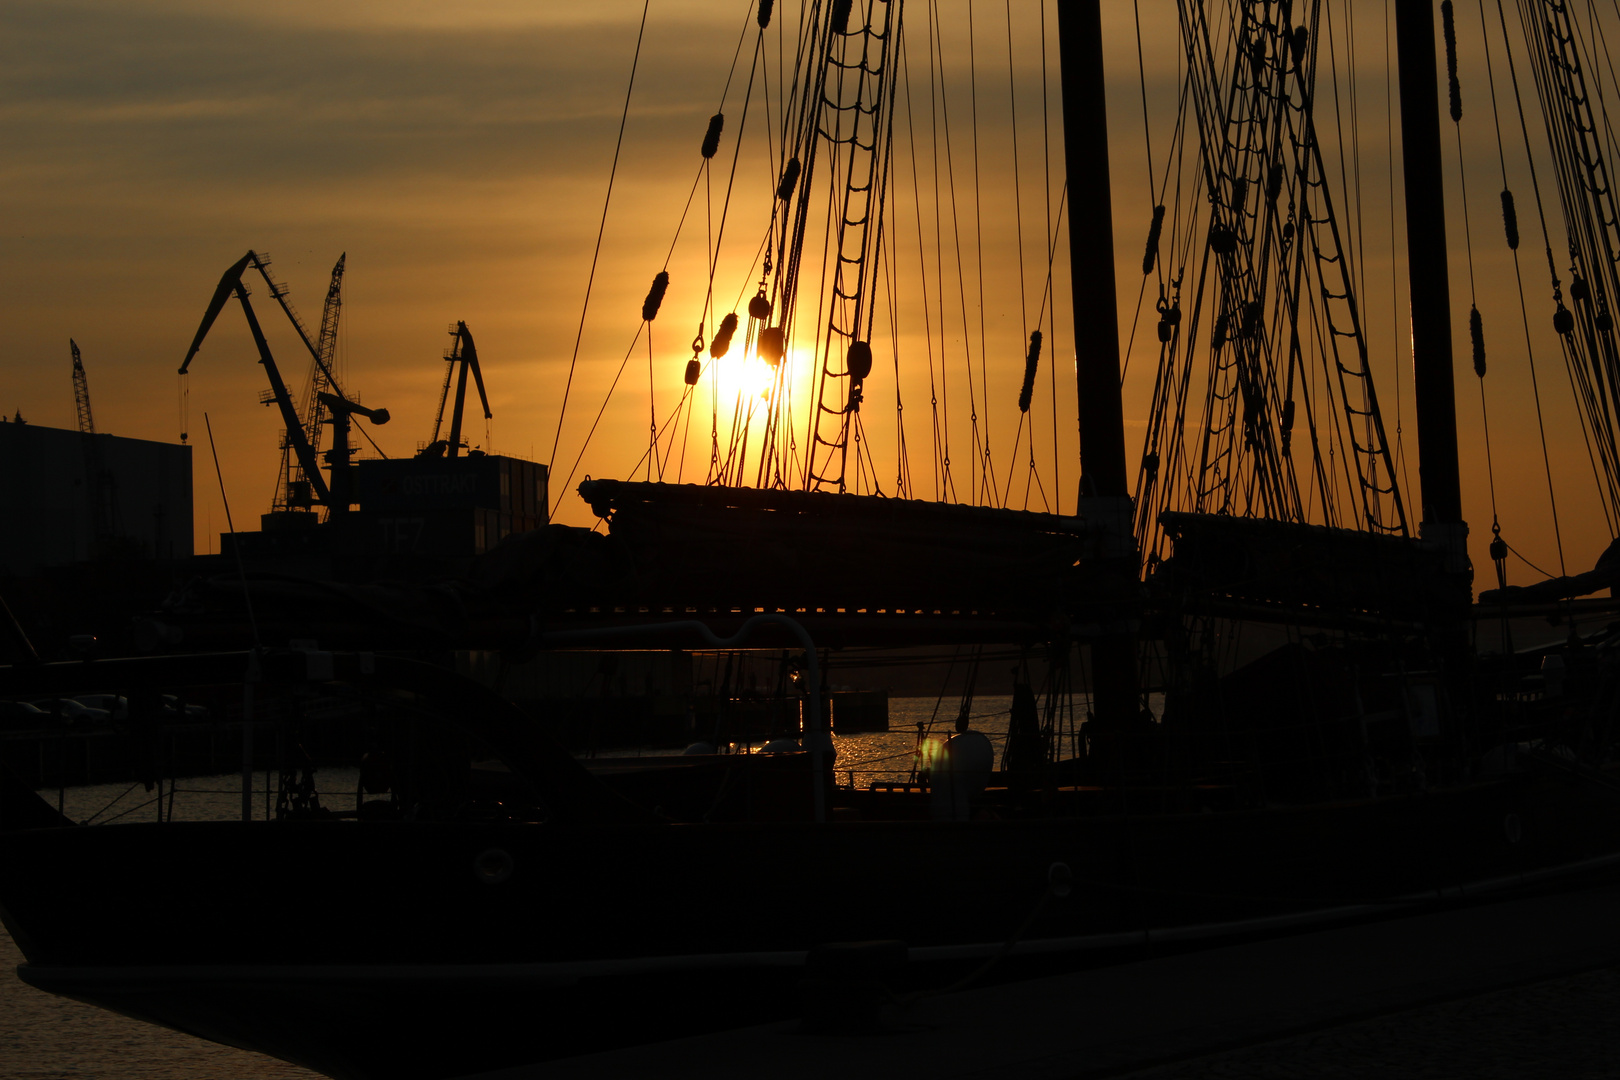 Sonnenuntergang in Wismar am Hafen